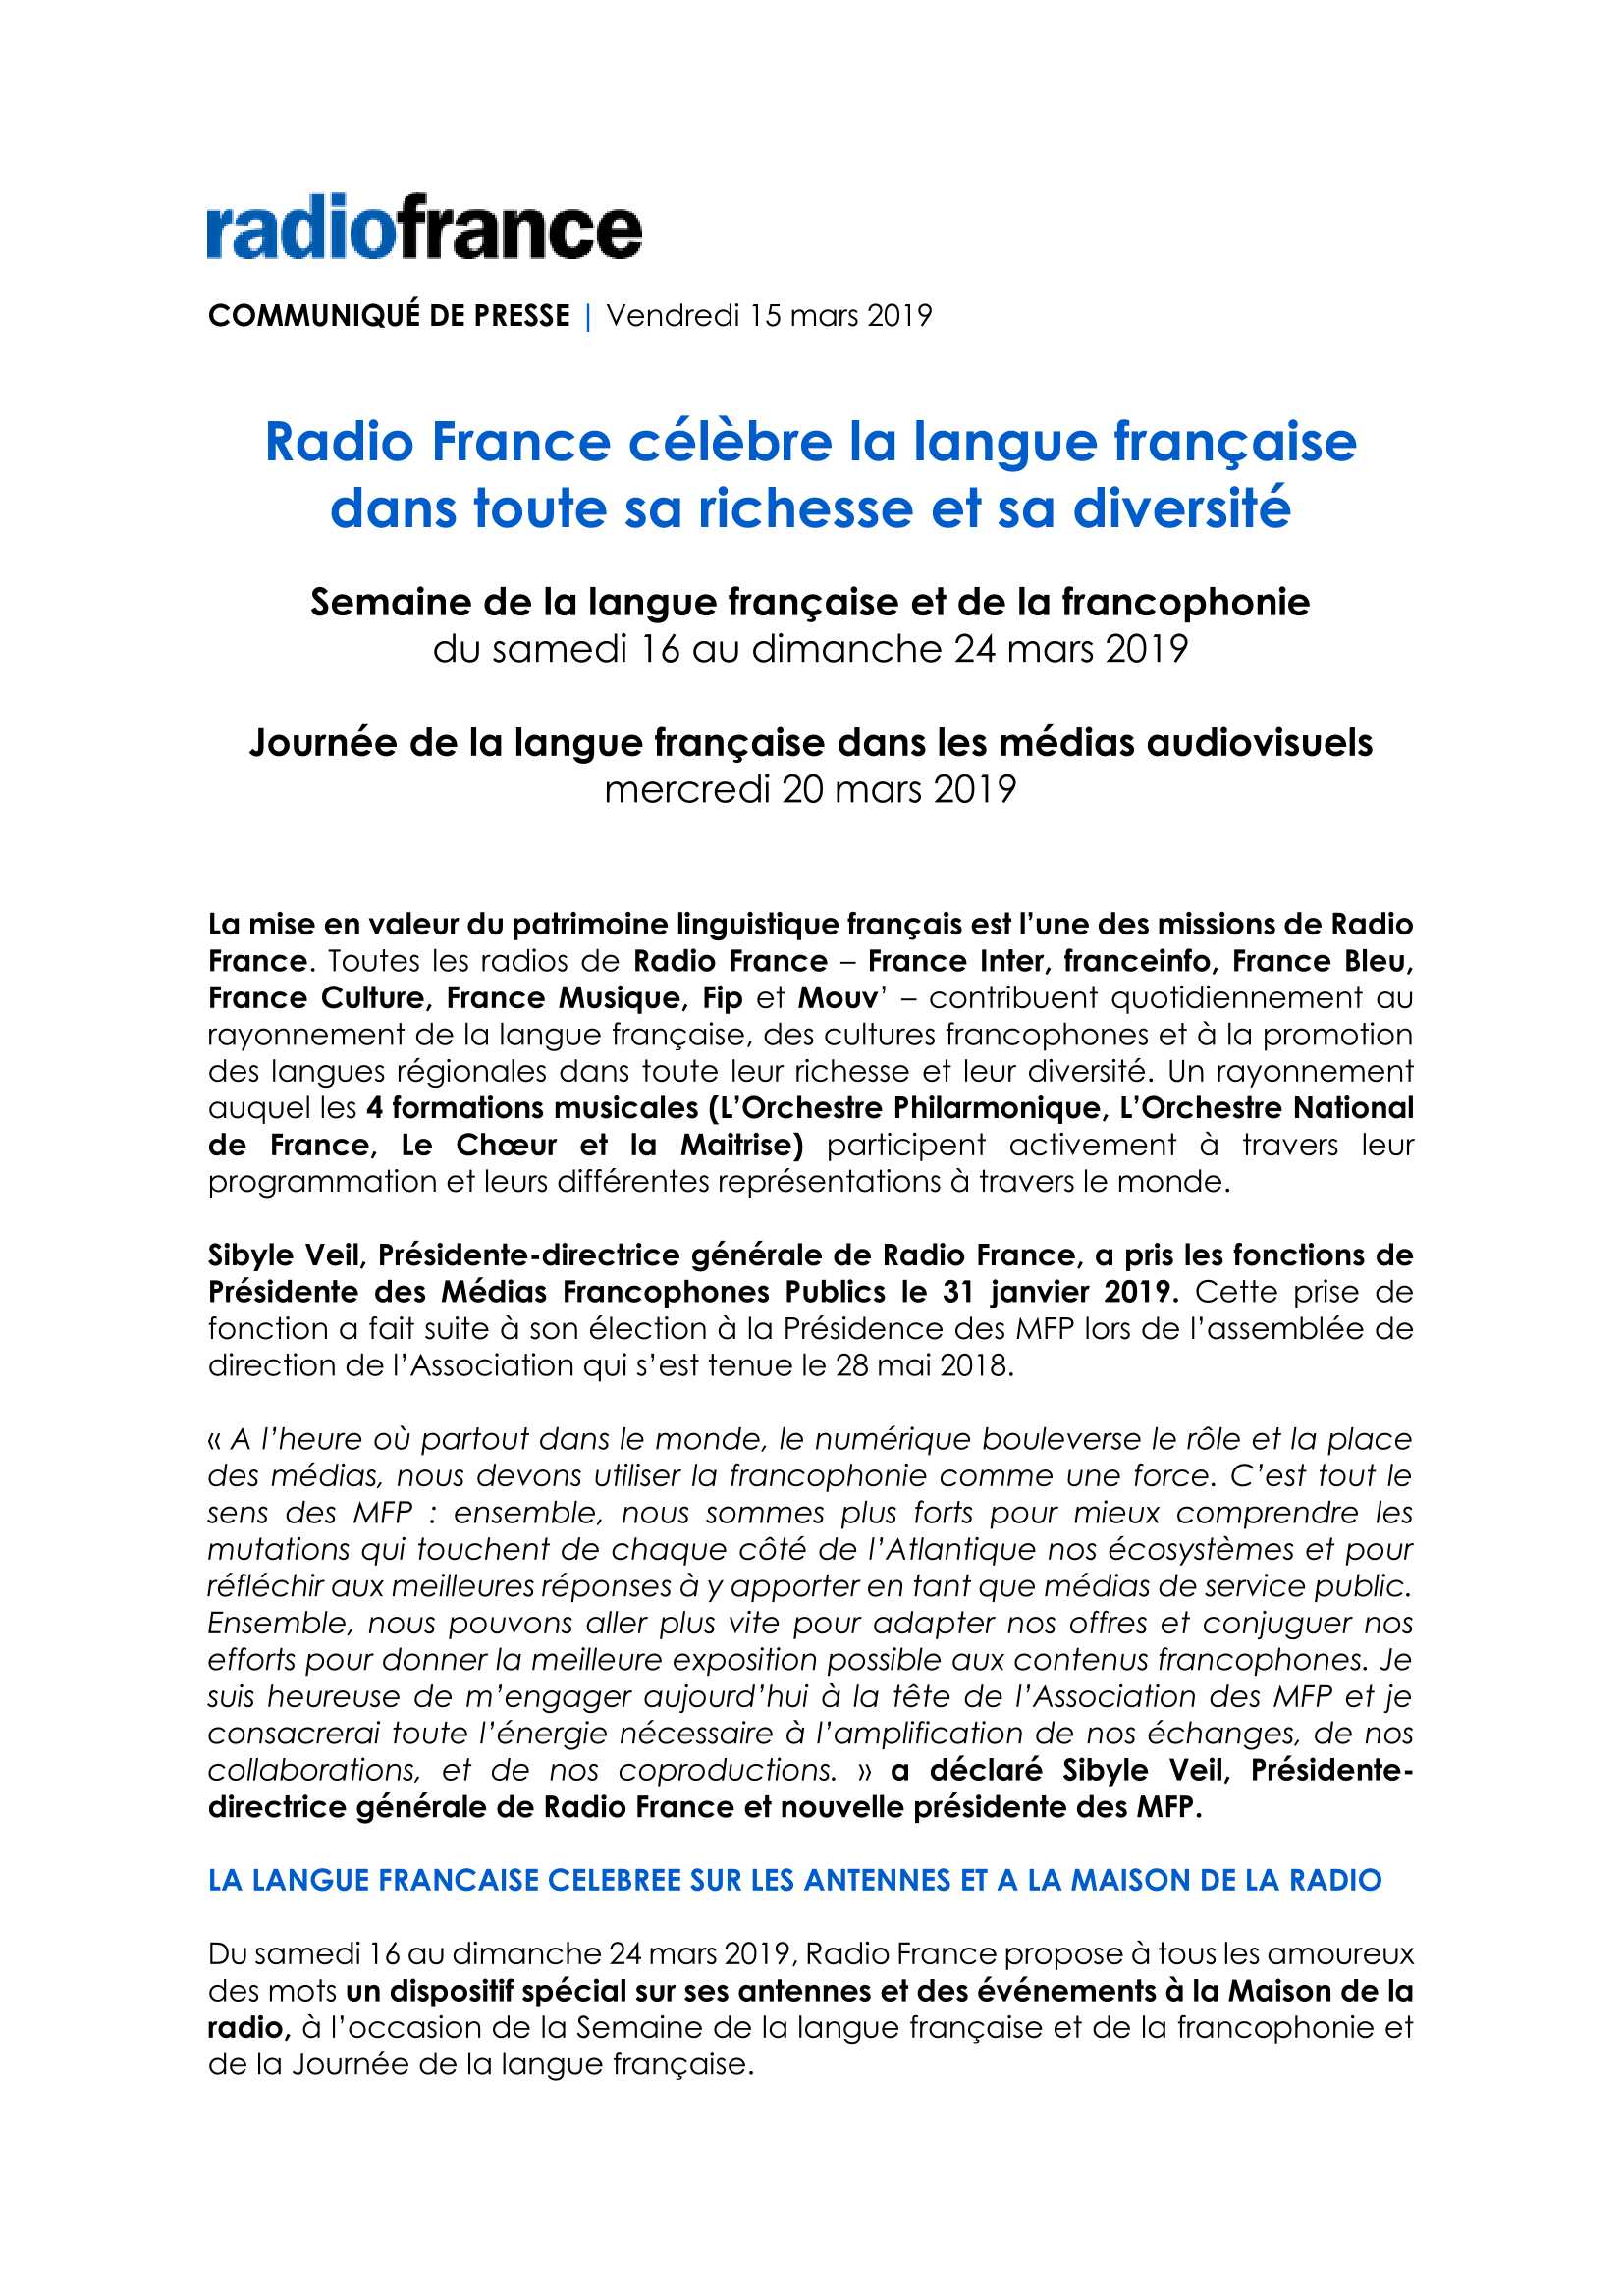 cp_radio-france-semaine-de-la-francophonie-journee-de-la-langue-francaise_2019-1